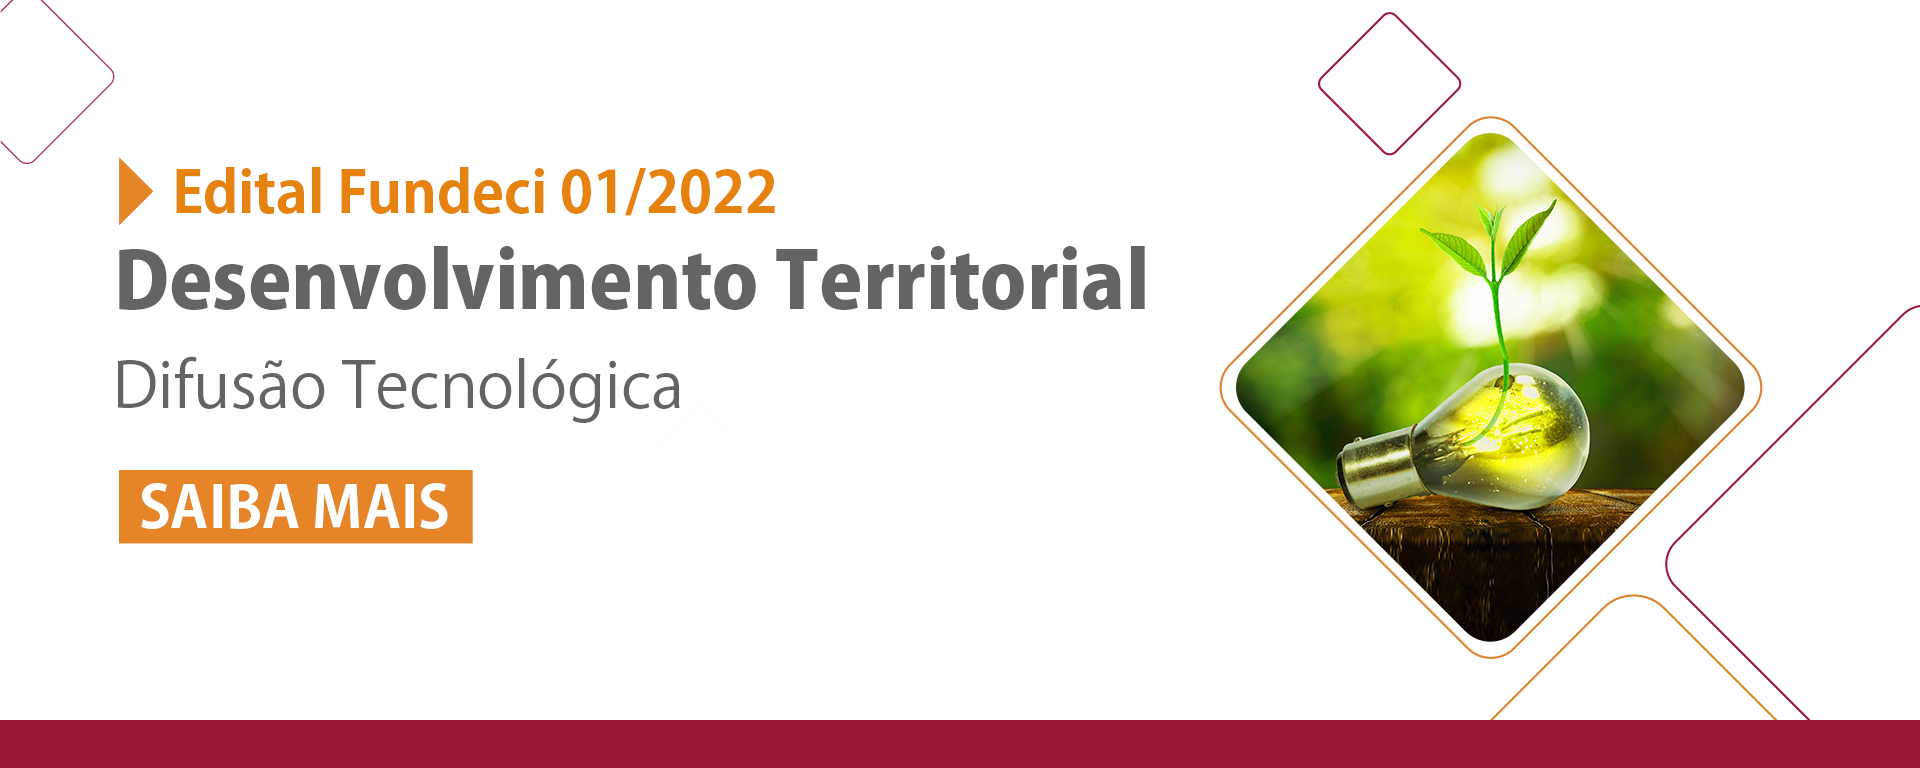 Edital Fundeci 01/2022 - Desenvolvimento Territorial - Difusão Tecnológica - Clique e saiba mais